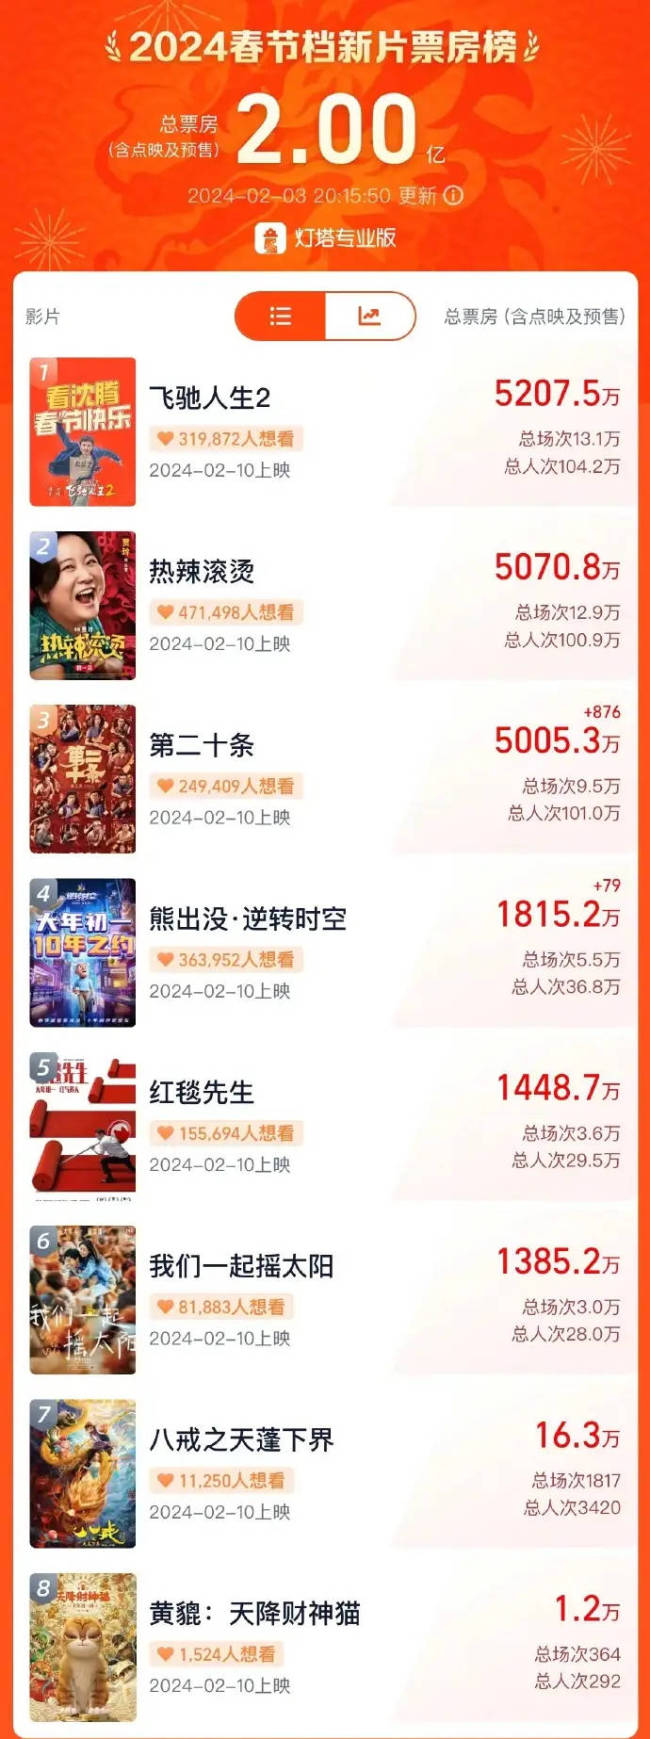 2024春节档预售票房破2亿 《飞驰人生2》暂列榜首